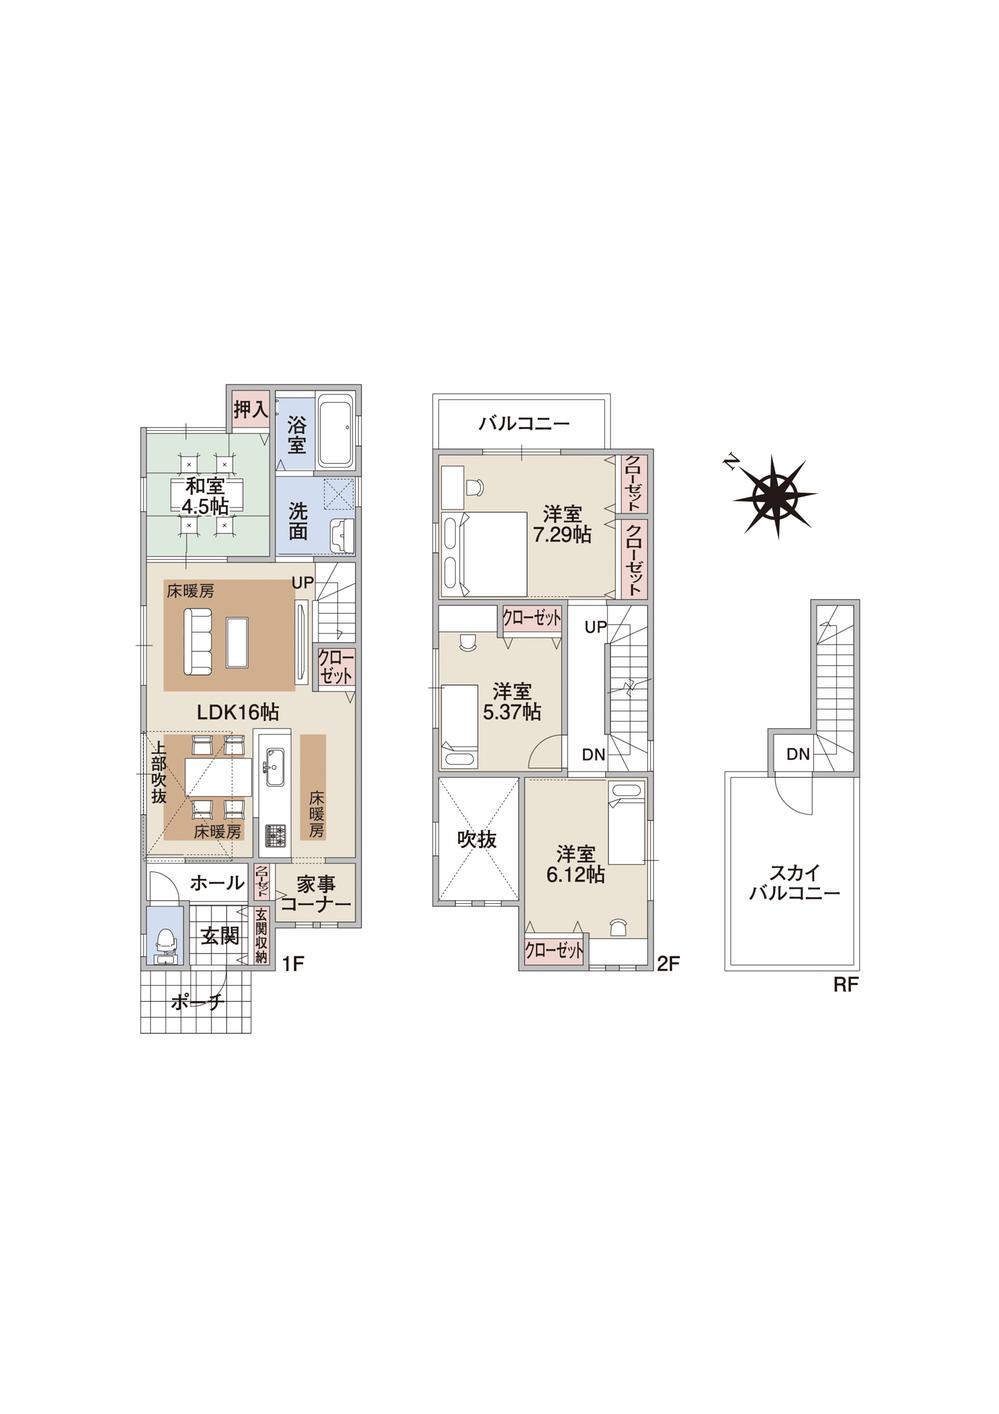 Building plan example (floor plan). Building plan example (No. 3 place Plan B) 4LDK, Land price 18,282,000 yen, Land area 109.91 sq m , Building price 17,341,000 yen, Building area 96.79 sq m